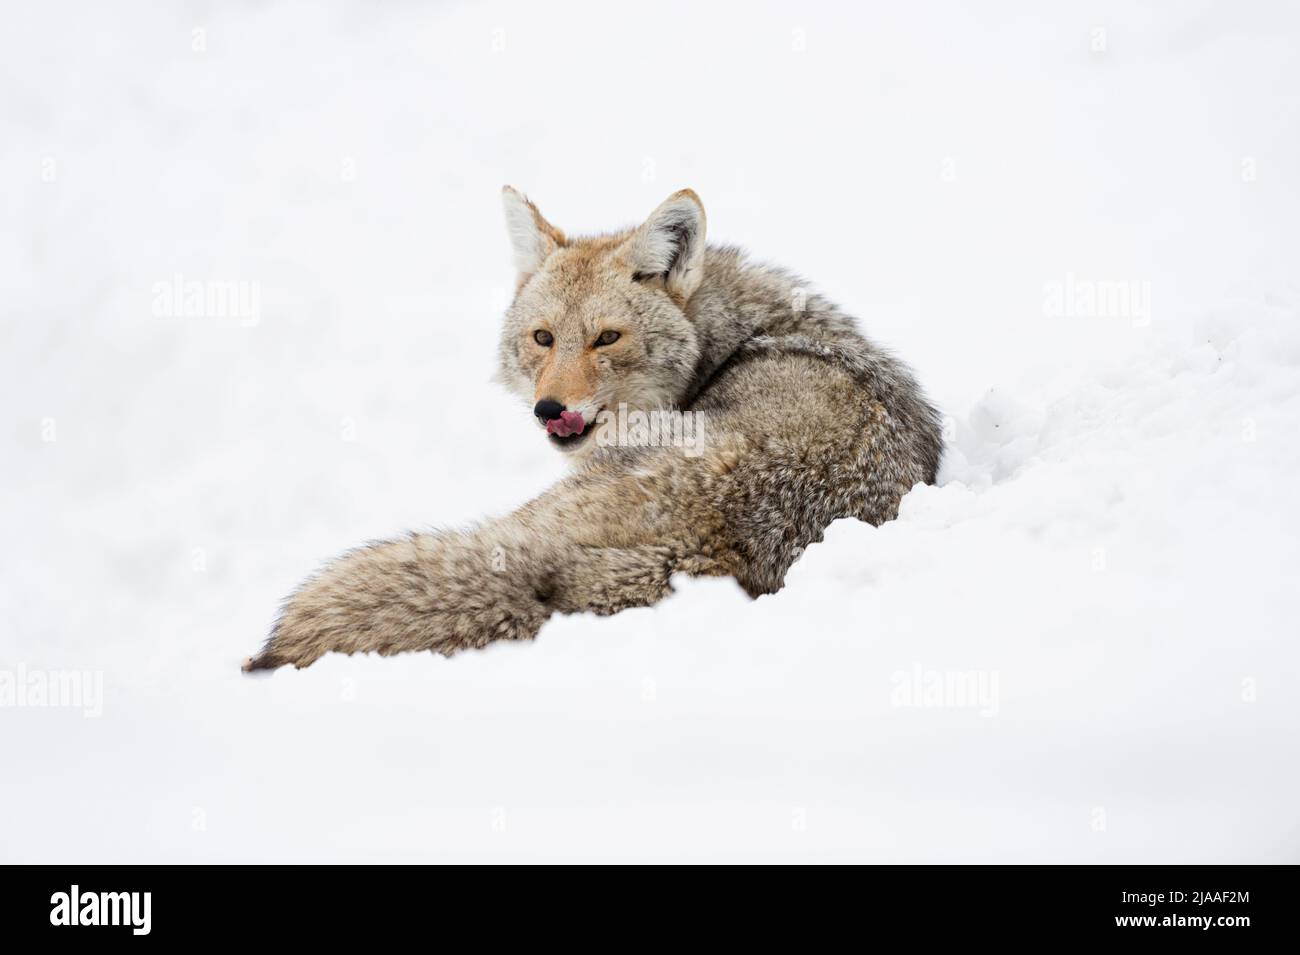 / Kojote Coyote ( Canis latrans ) en invierno, mintiendo en alto la nieve, descansando, lamiendo su lengua, observando atento, Parque Nacional Yellowstone, ESTADOS UNIDOS. Foto de stock